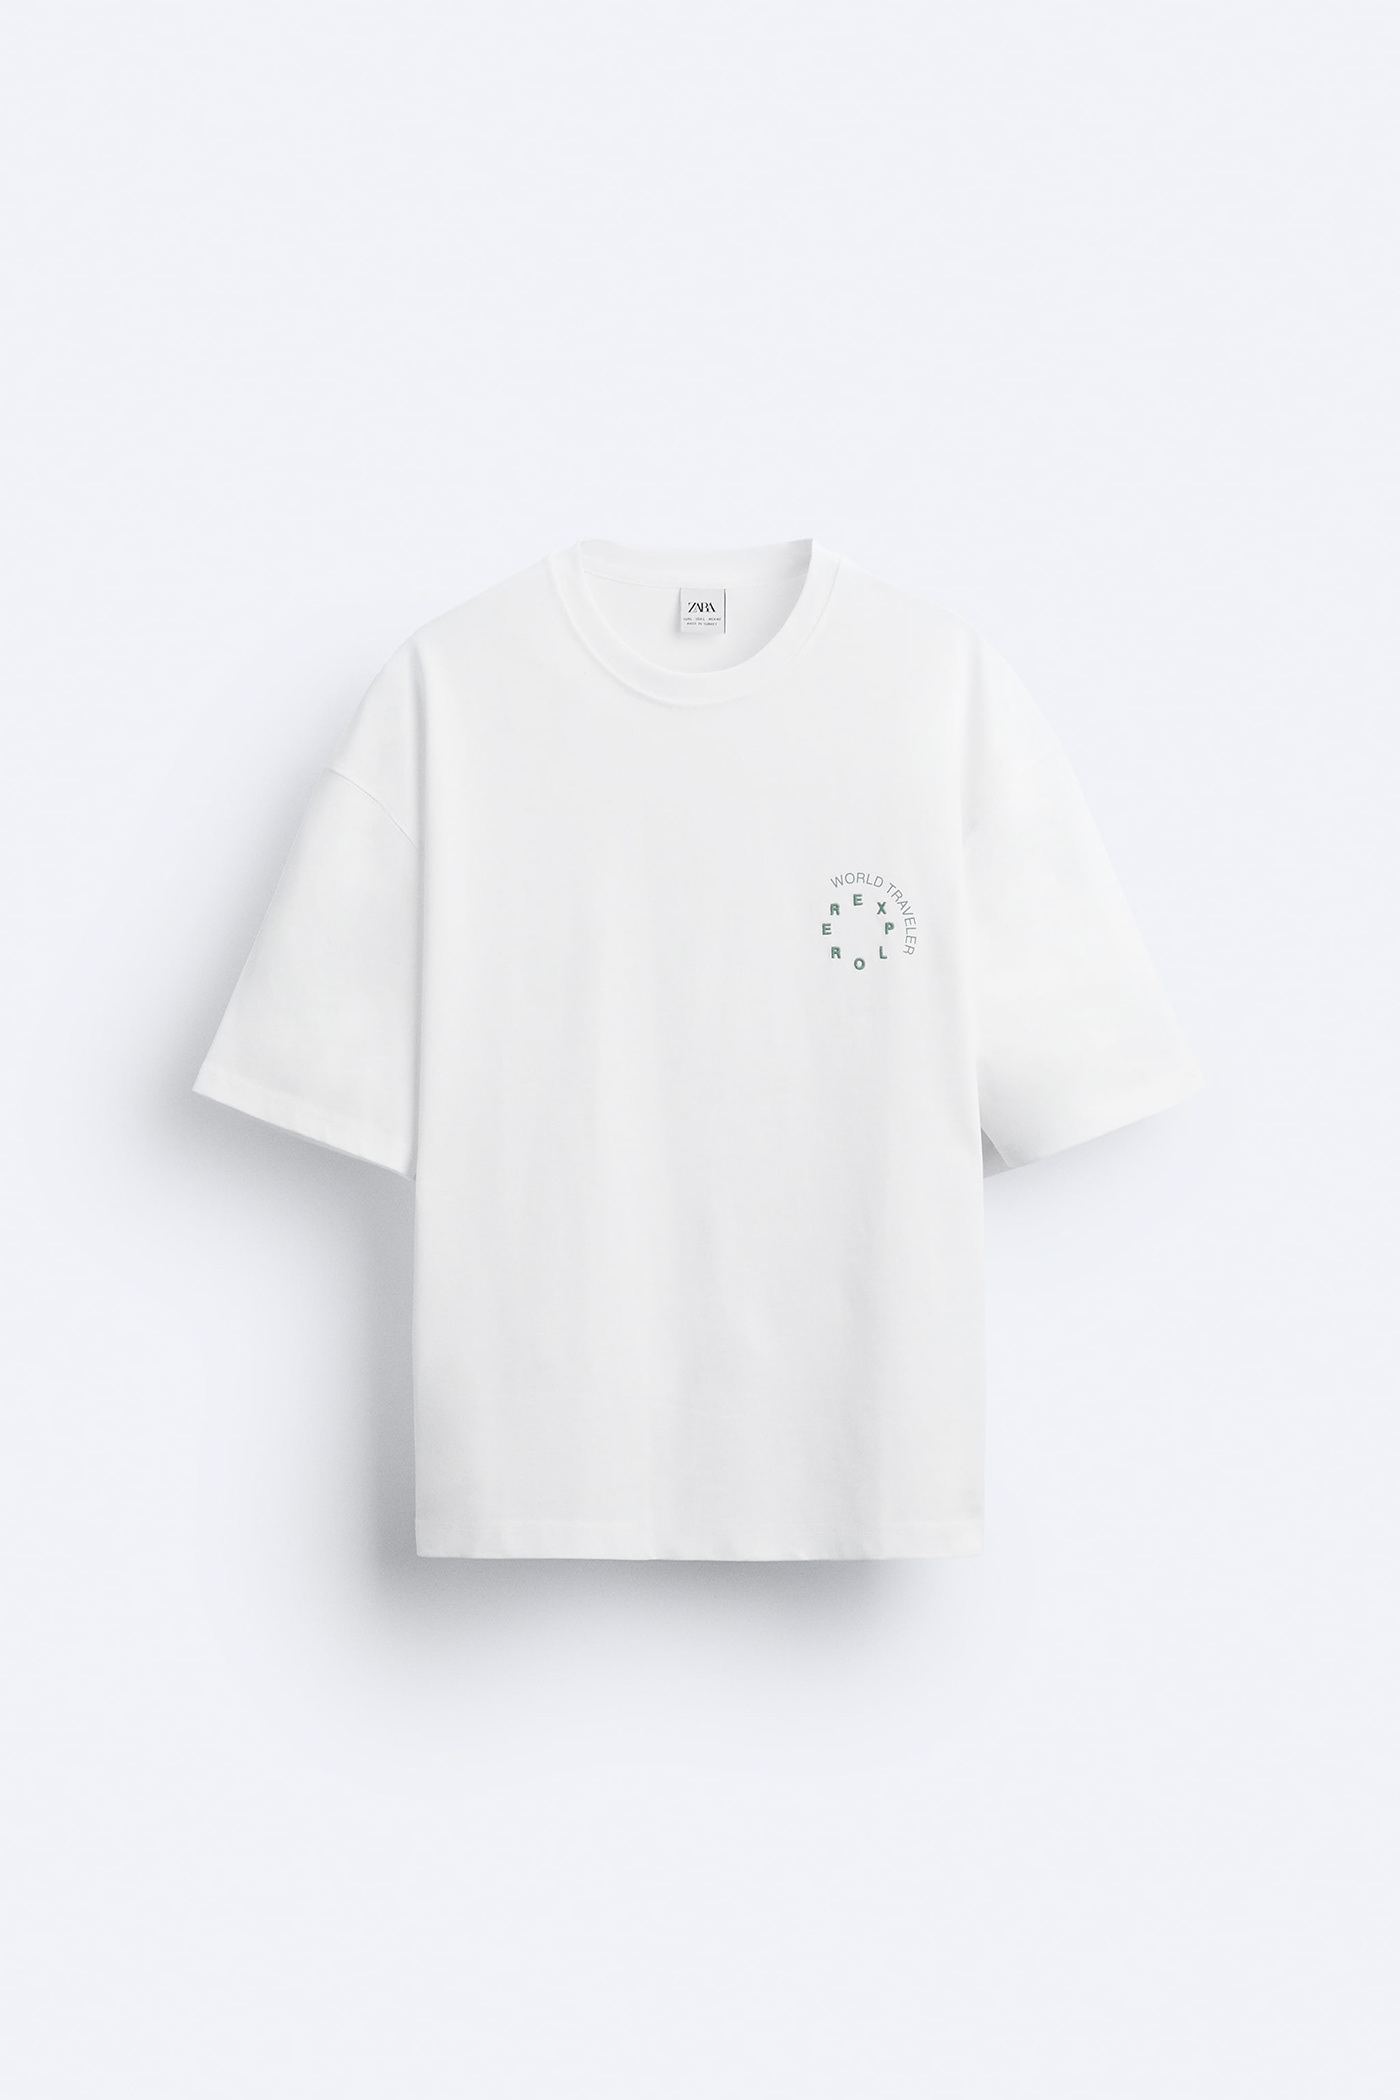 Fashion  Clothing t-shirt Tshirt Design typography  